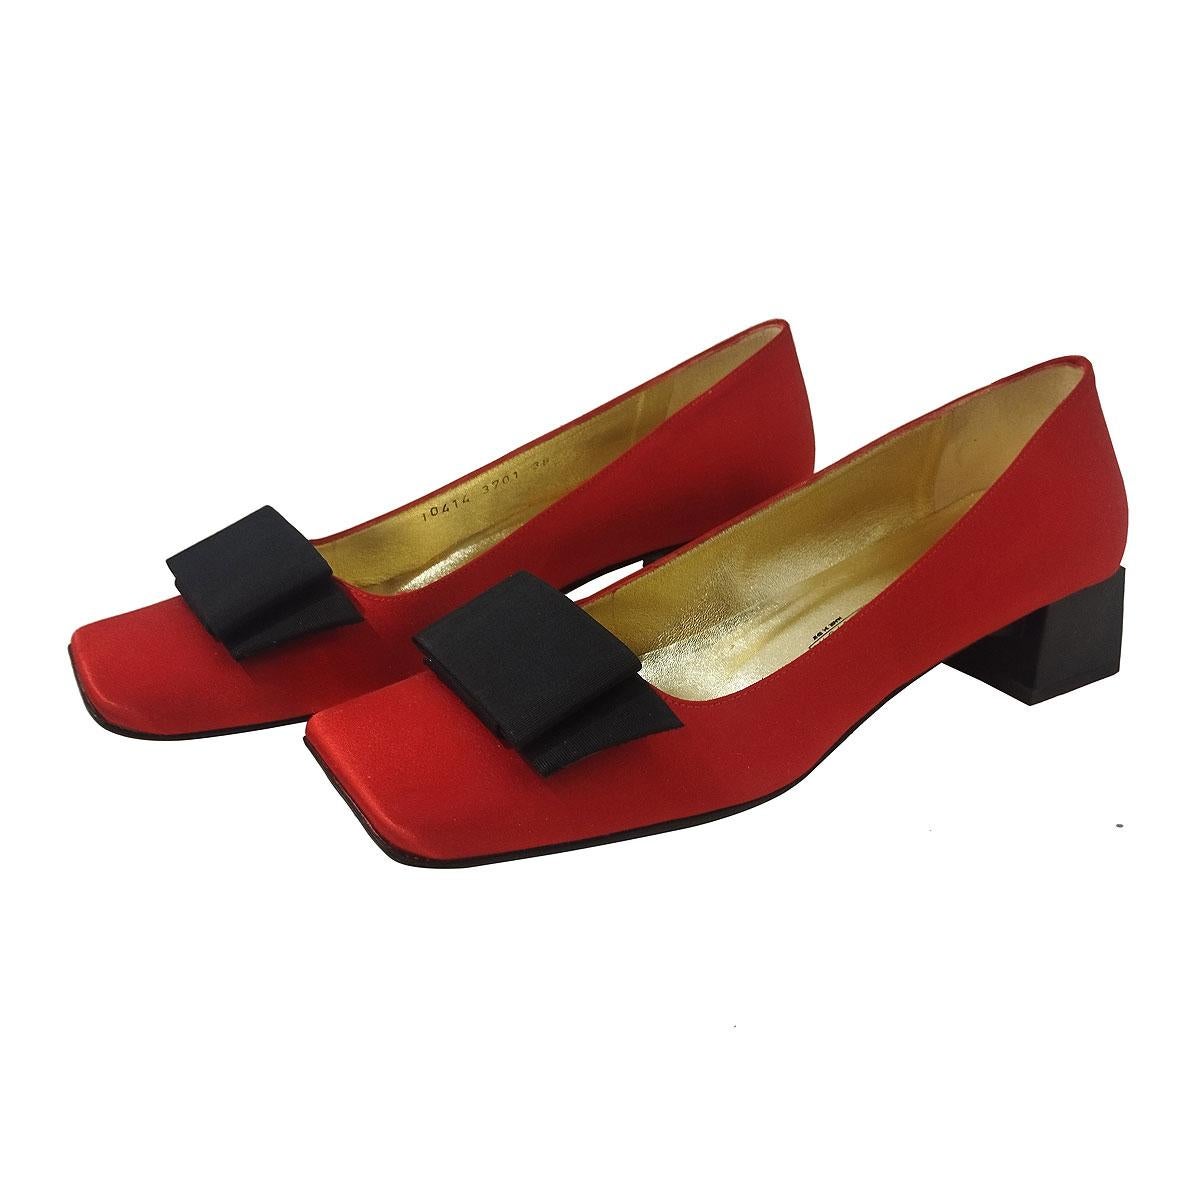 Magnifiques chaussures vintage de Giuseppe Zanotti Design
Vintage
Satin
Couleur rouge
Arc noir
Hauteur du talon cm 3,5 (1,37 inches)
Fabriqué en Italie
Livraison rapide dans le monde entier incluse dans le prix